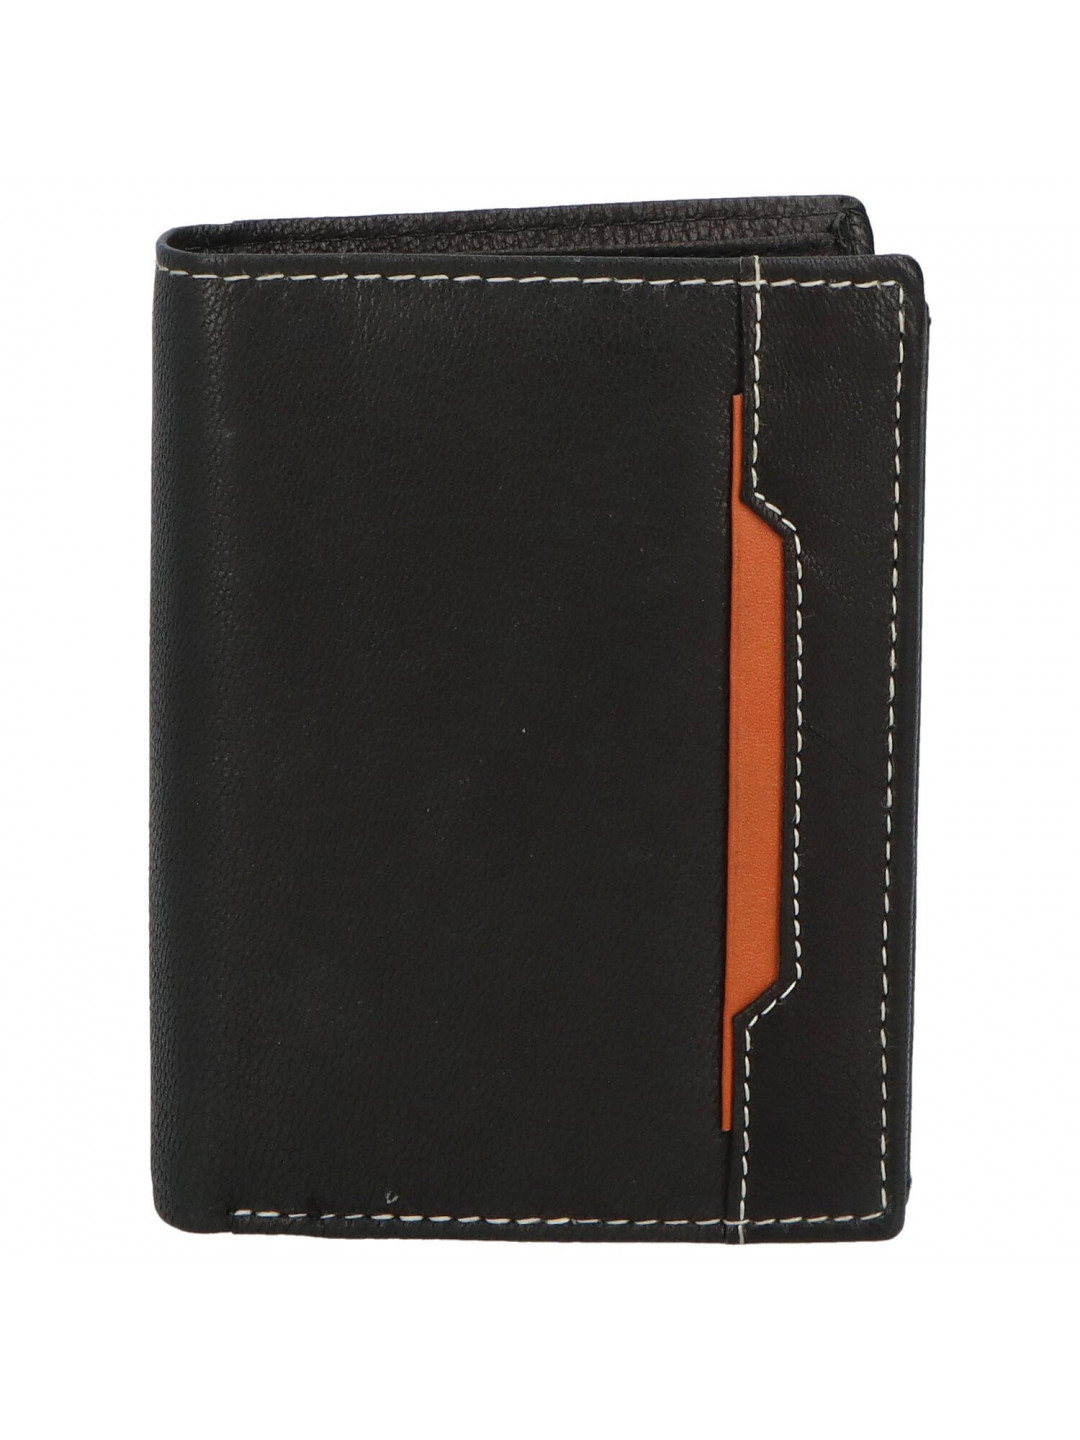 Trendová pánská kožená peněženka Vero černo – koňaková